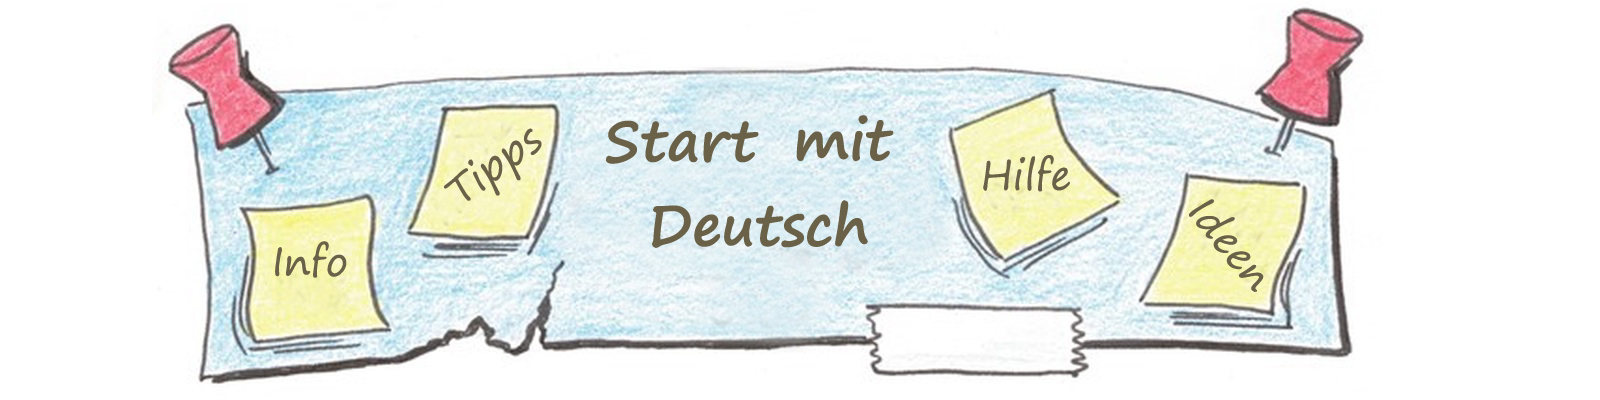 Banner - Start mit Deutsch